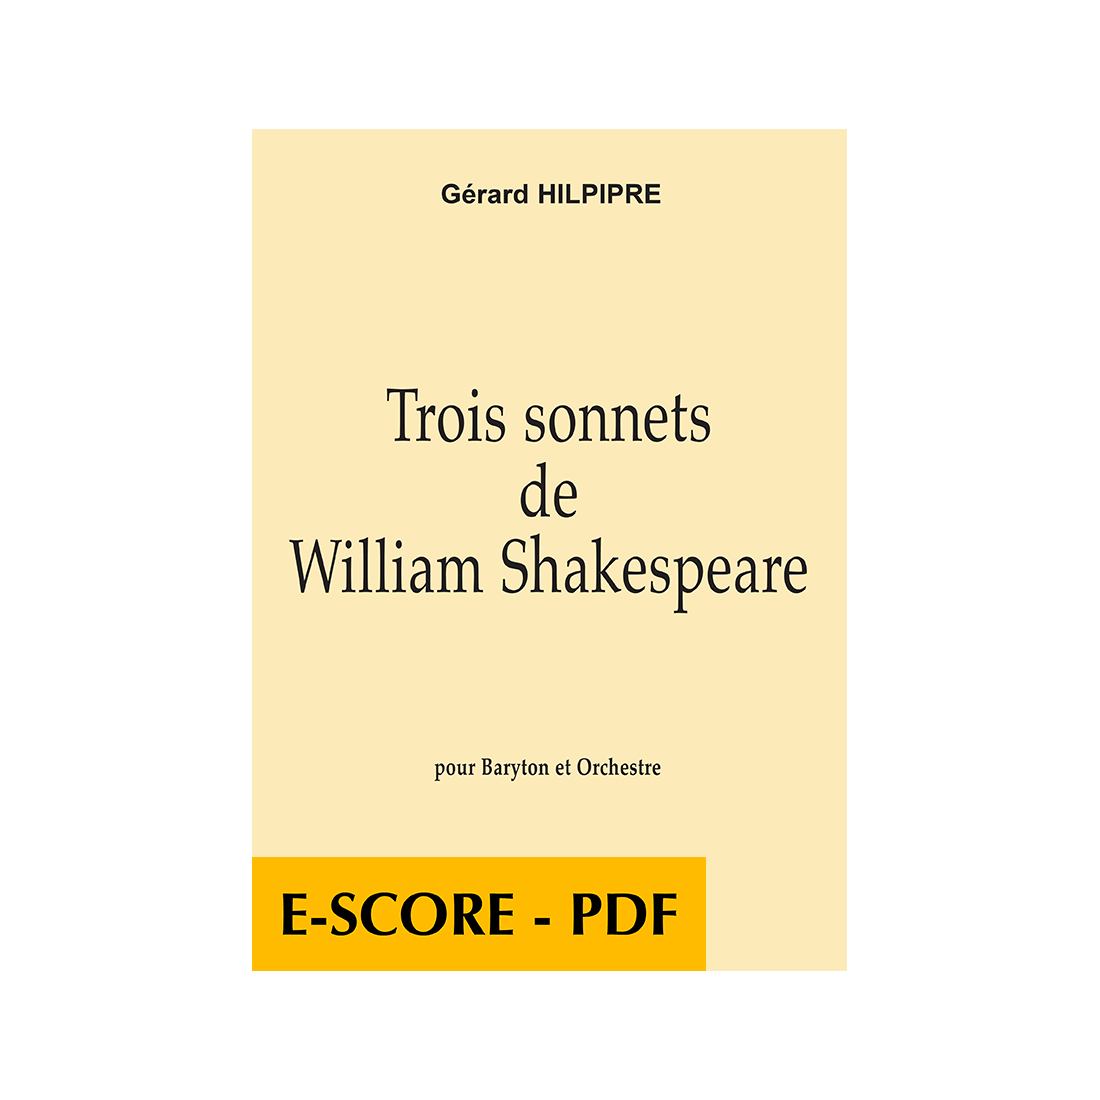 Three sonnets of William Shakespeare for baritone and orchestra (FULL SCORE) - E-Score PDF